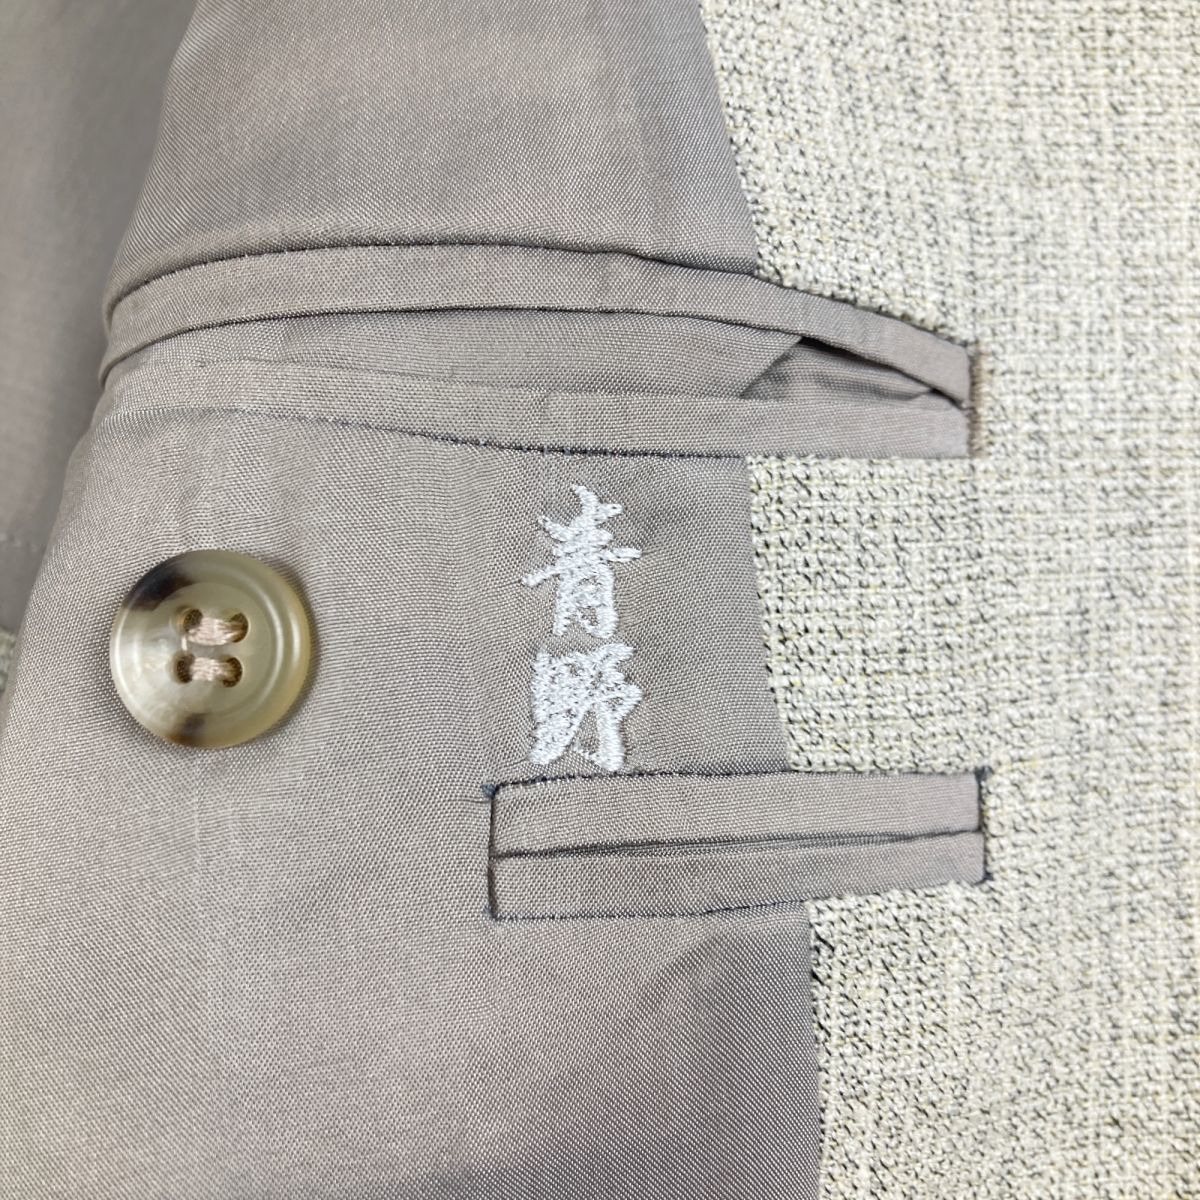  новый товар не использовался TRUSSARDI Trussardi linen шерсть . центральный Press брюки выставить костюм необшитый на спине мужской серый серия размер L*LC1258